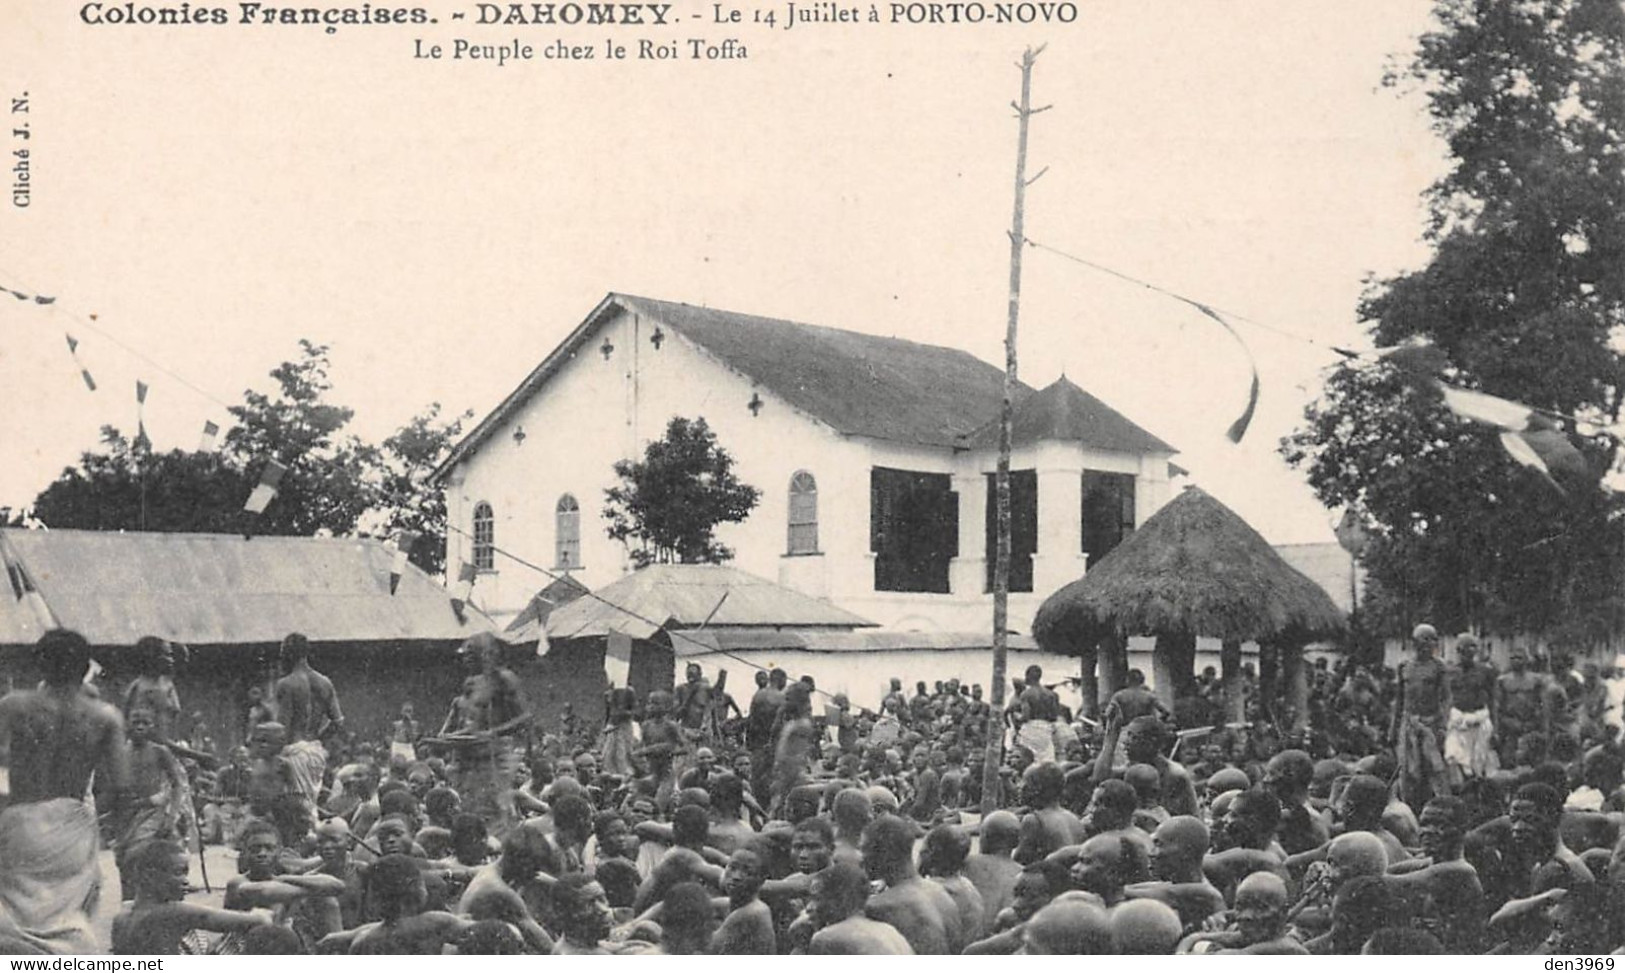 Afrique - Dahomey - Le 14 Juillet à PORTO-NOVO - Le Peuple Chez Le Roi Toffa - Colonies Françaises - Dahomey